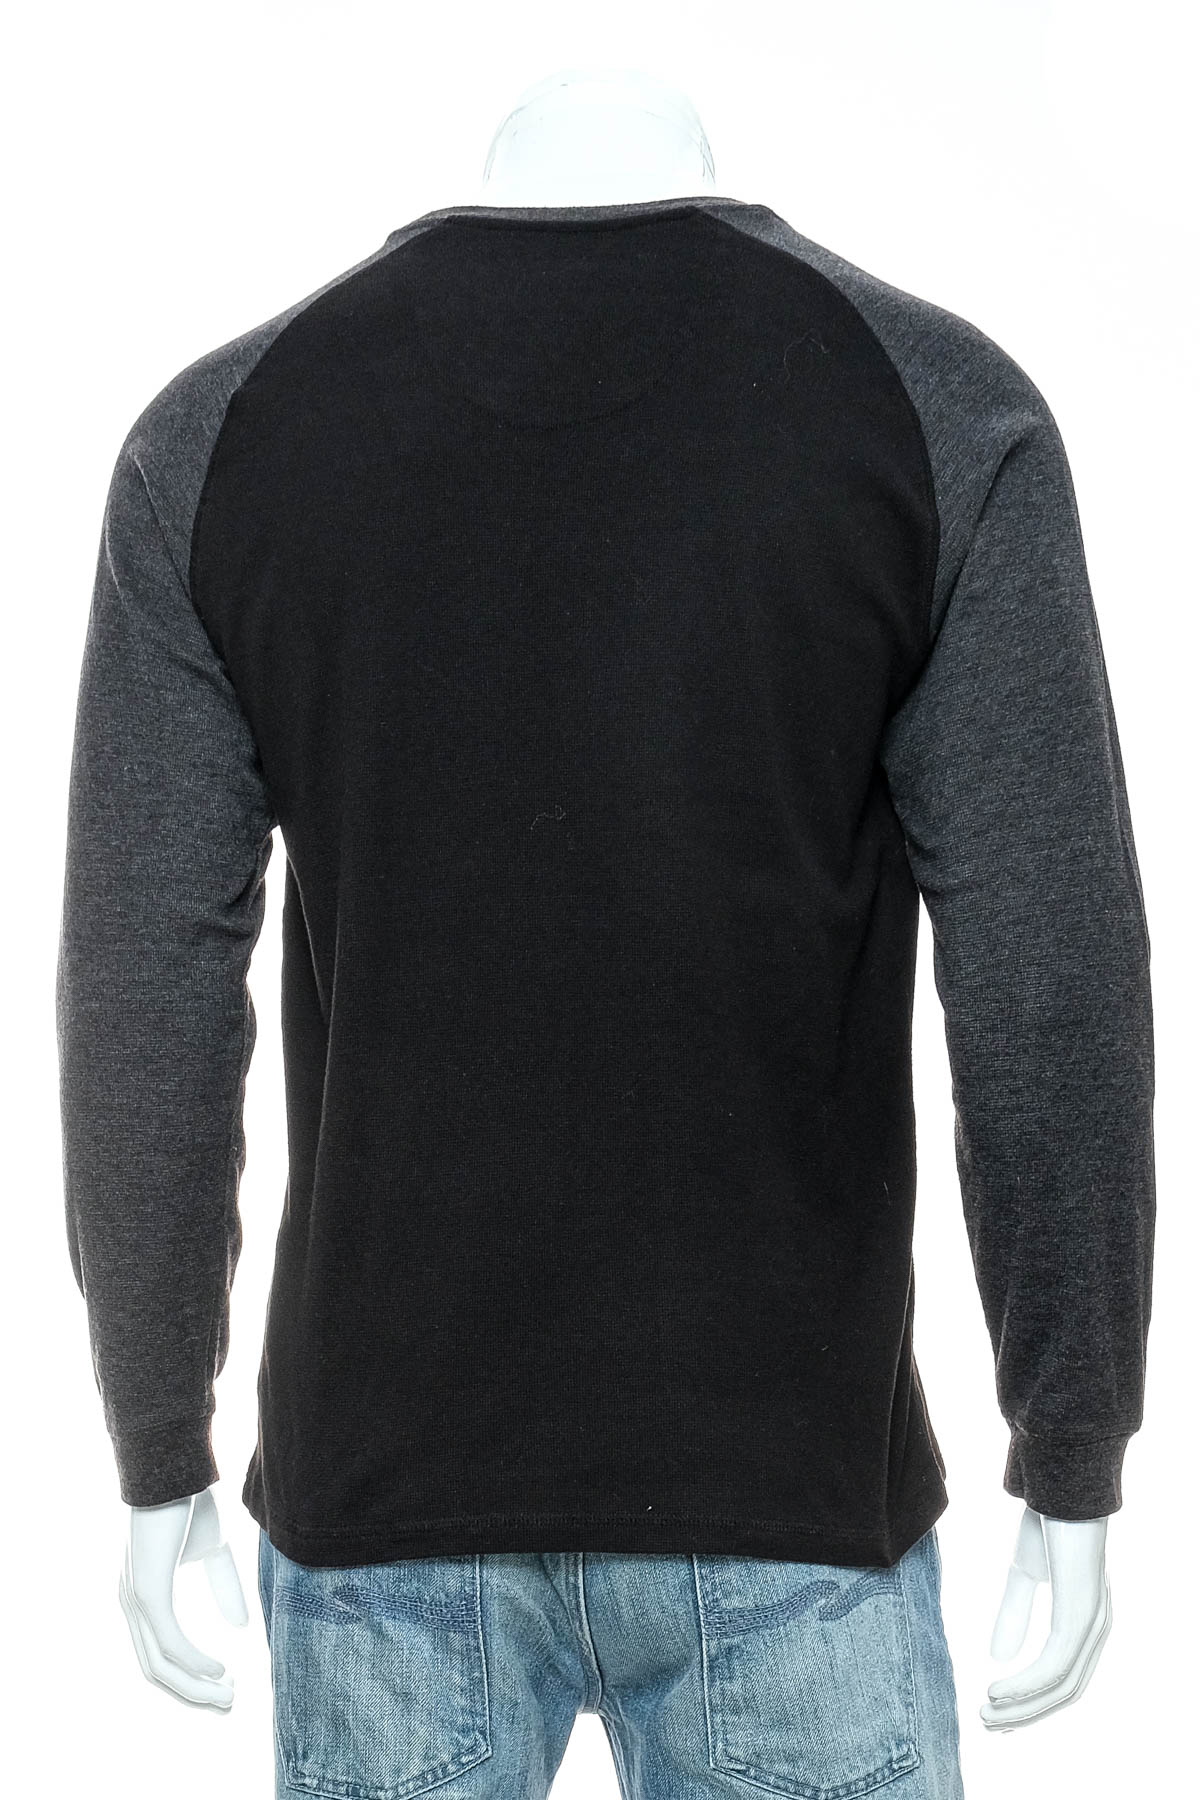 Men's sweater - Pierre Cardin - 1